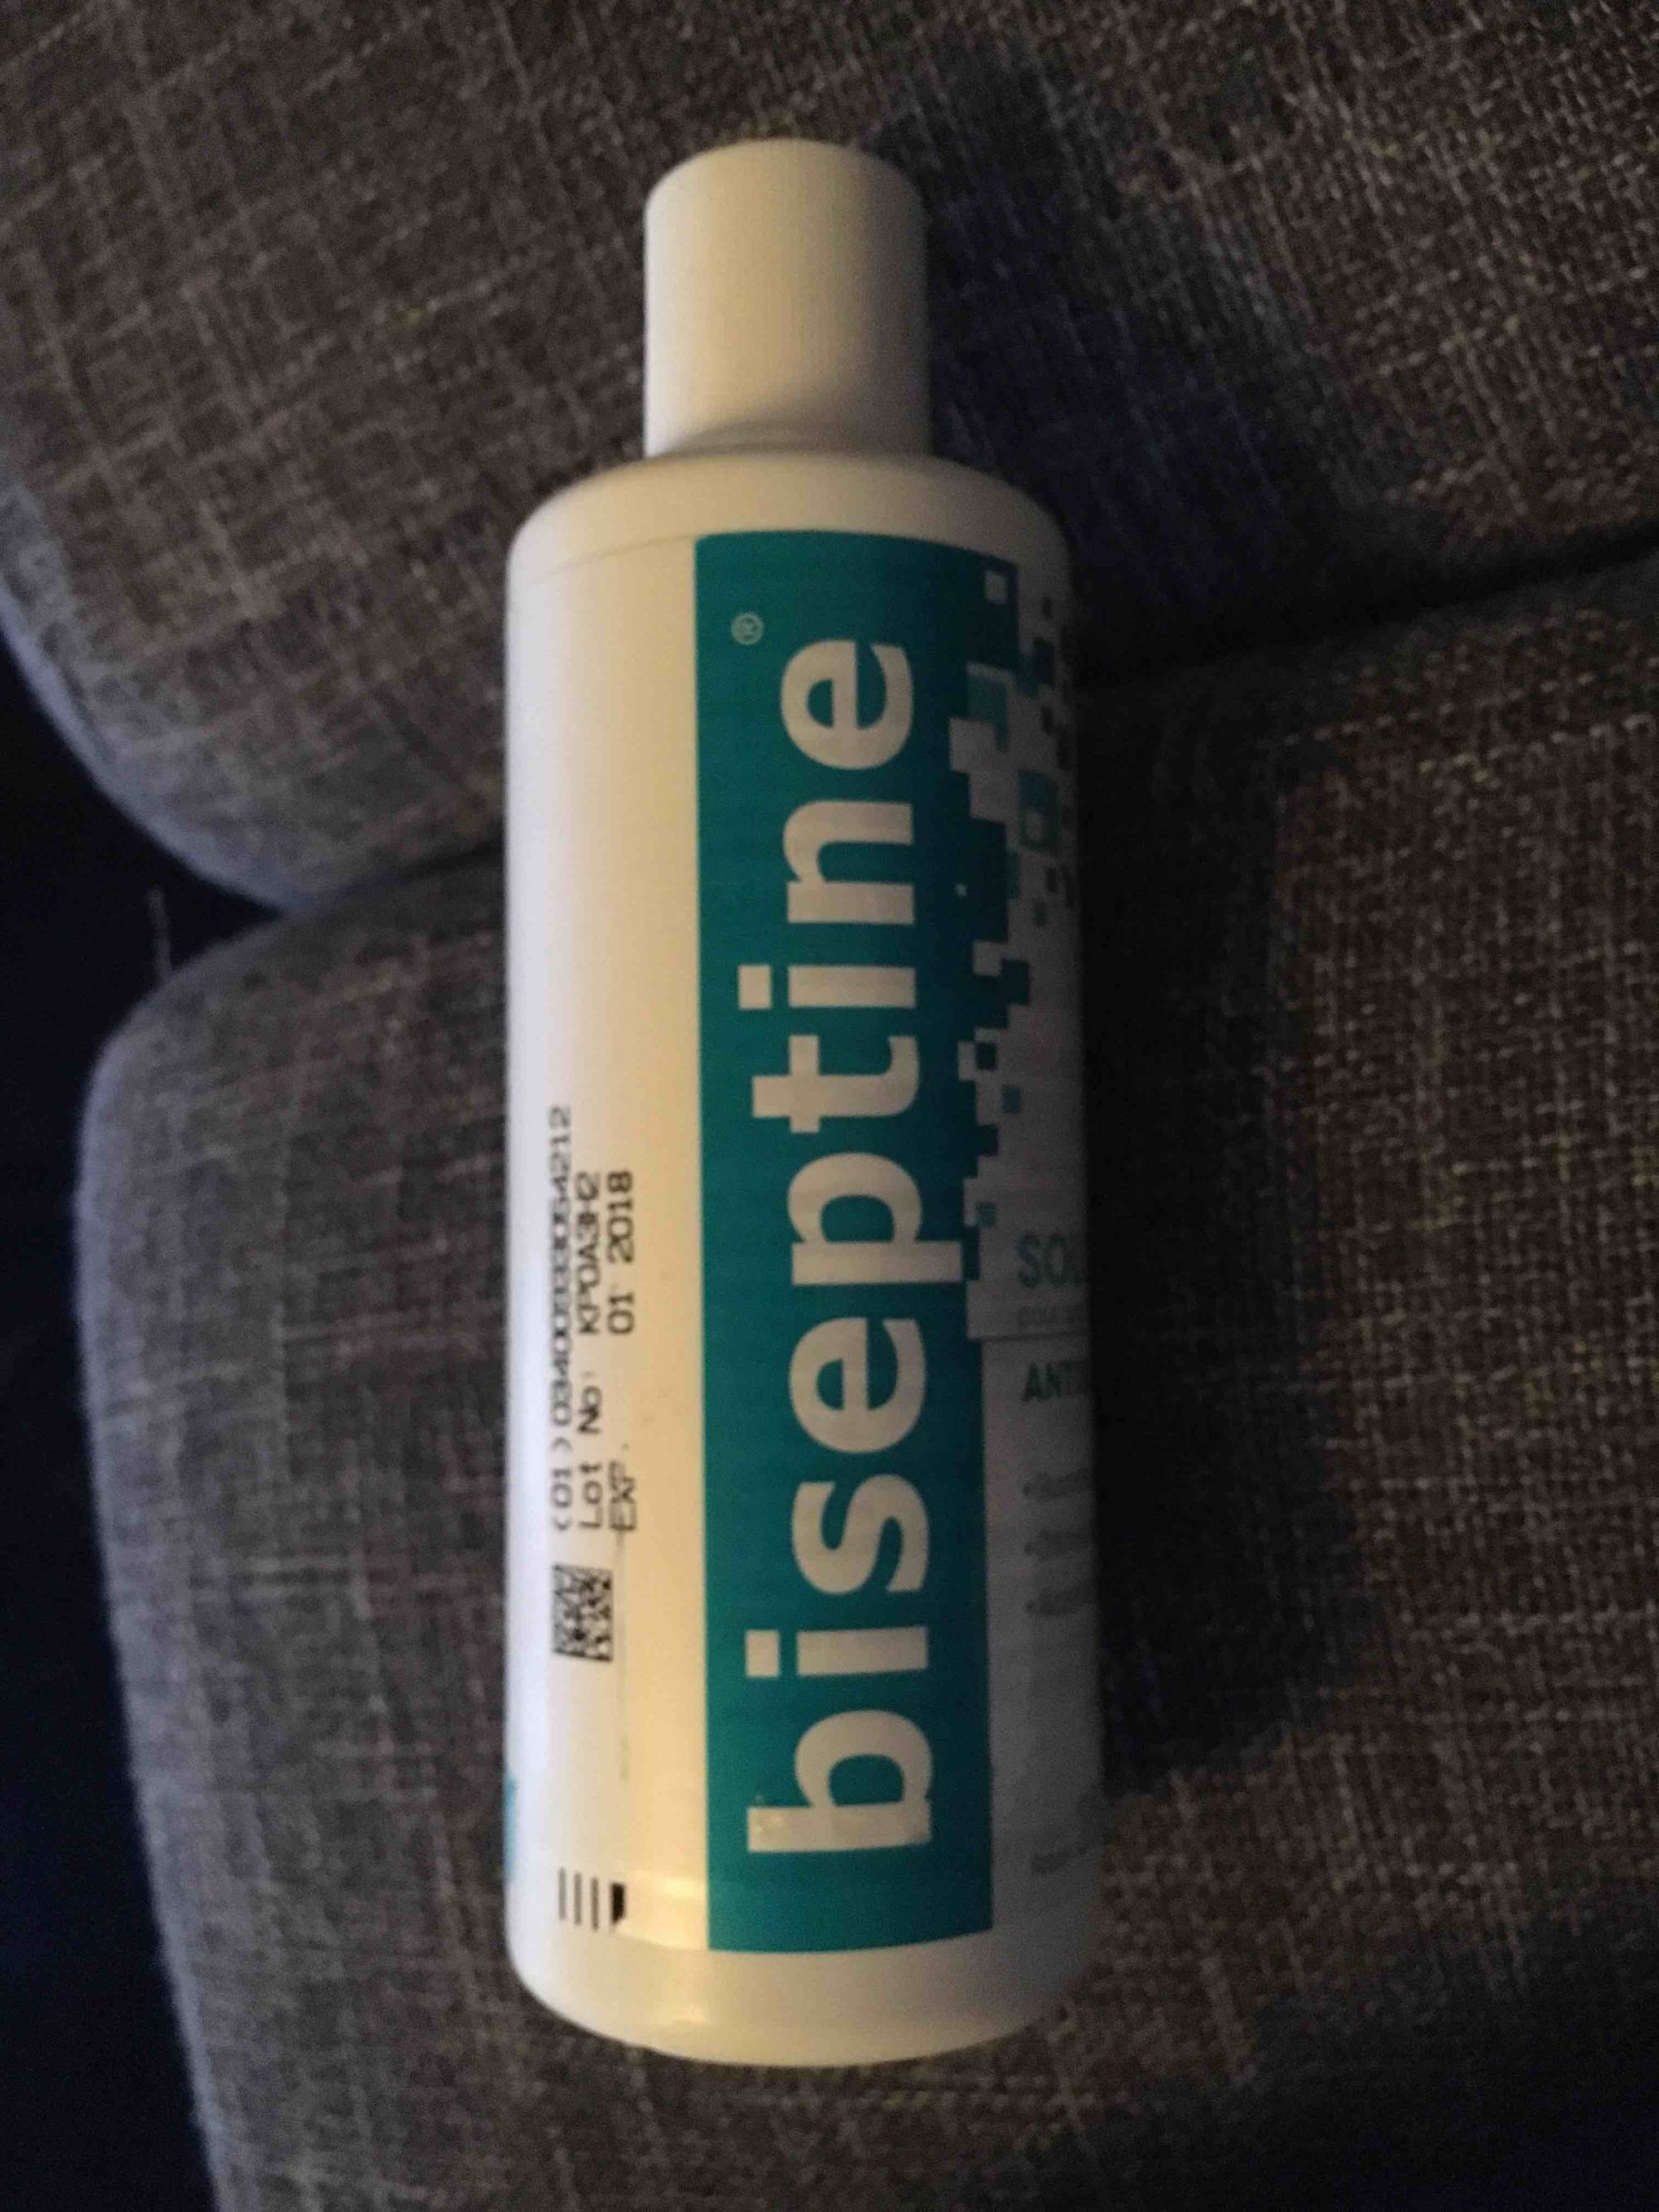 BISEPTINE - Solution Antiseptique - 250 ml